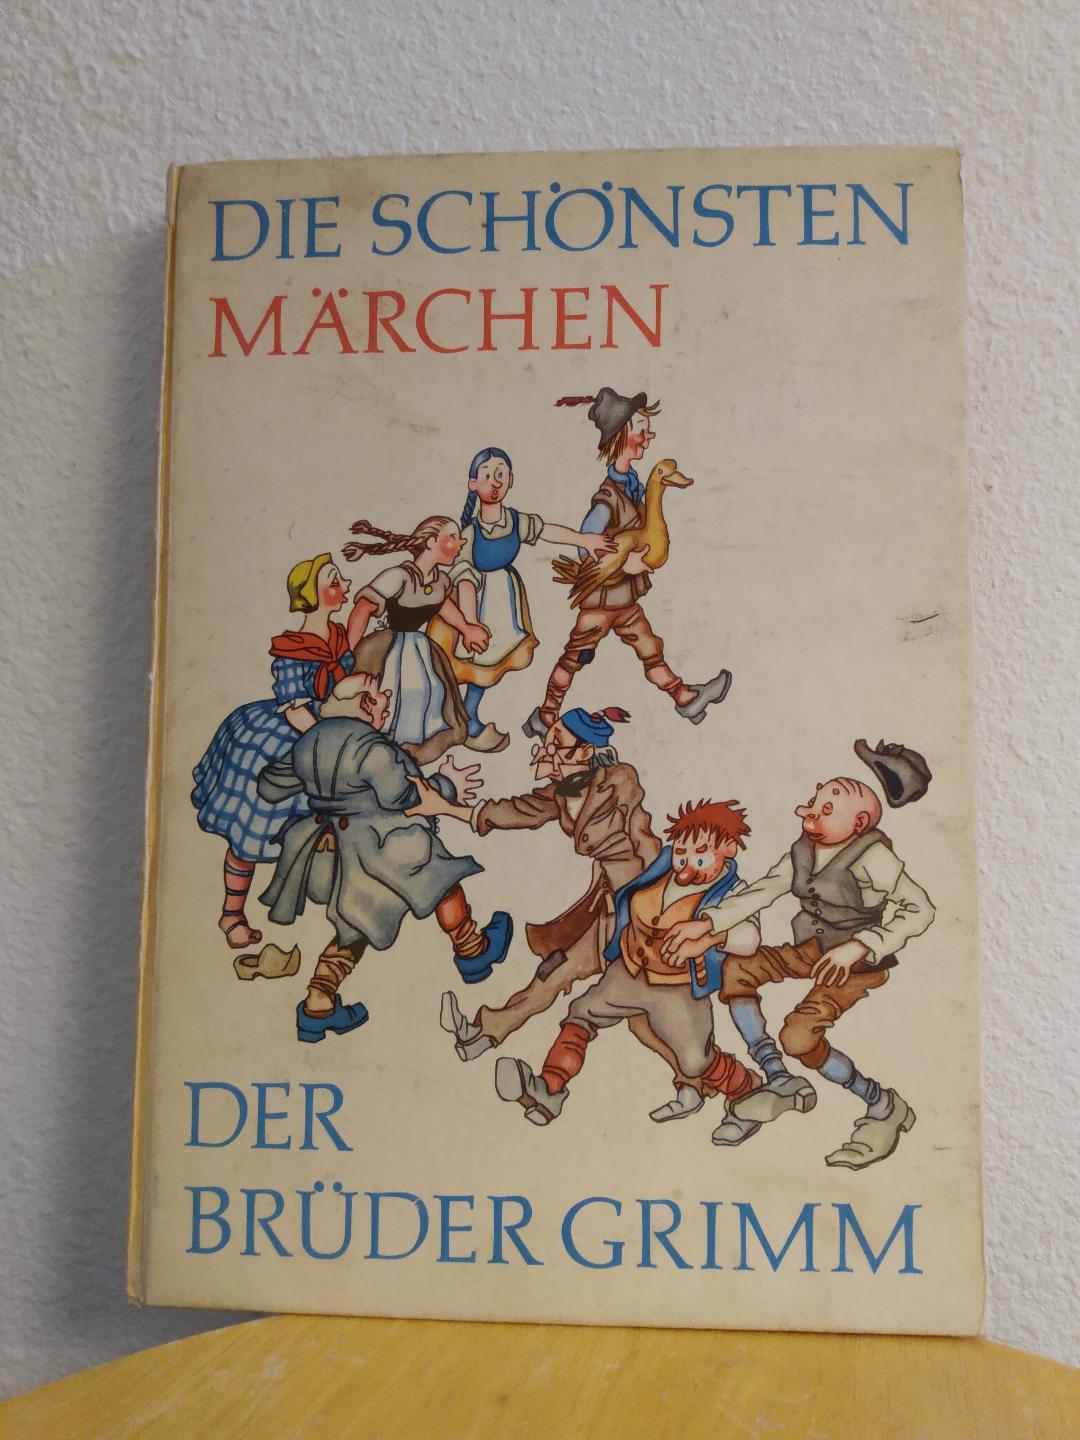 Die Schonsten Marchen der Bruder Grimm [The Most Beautiful Fairy Tales ...